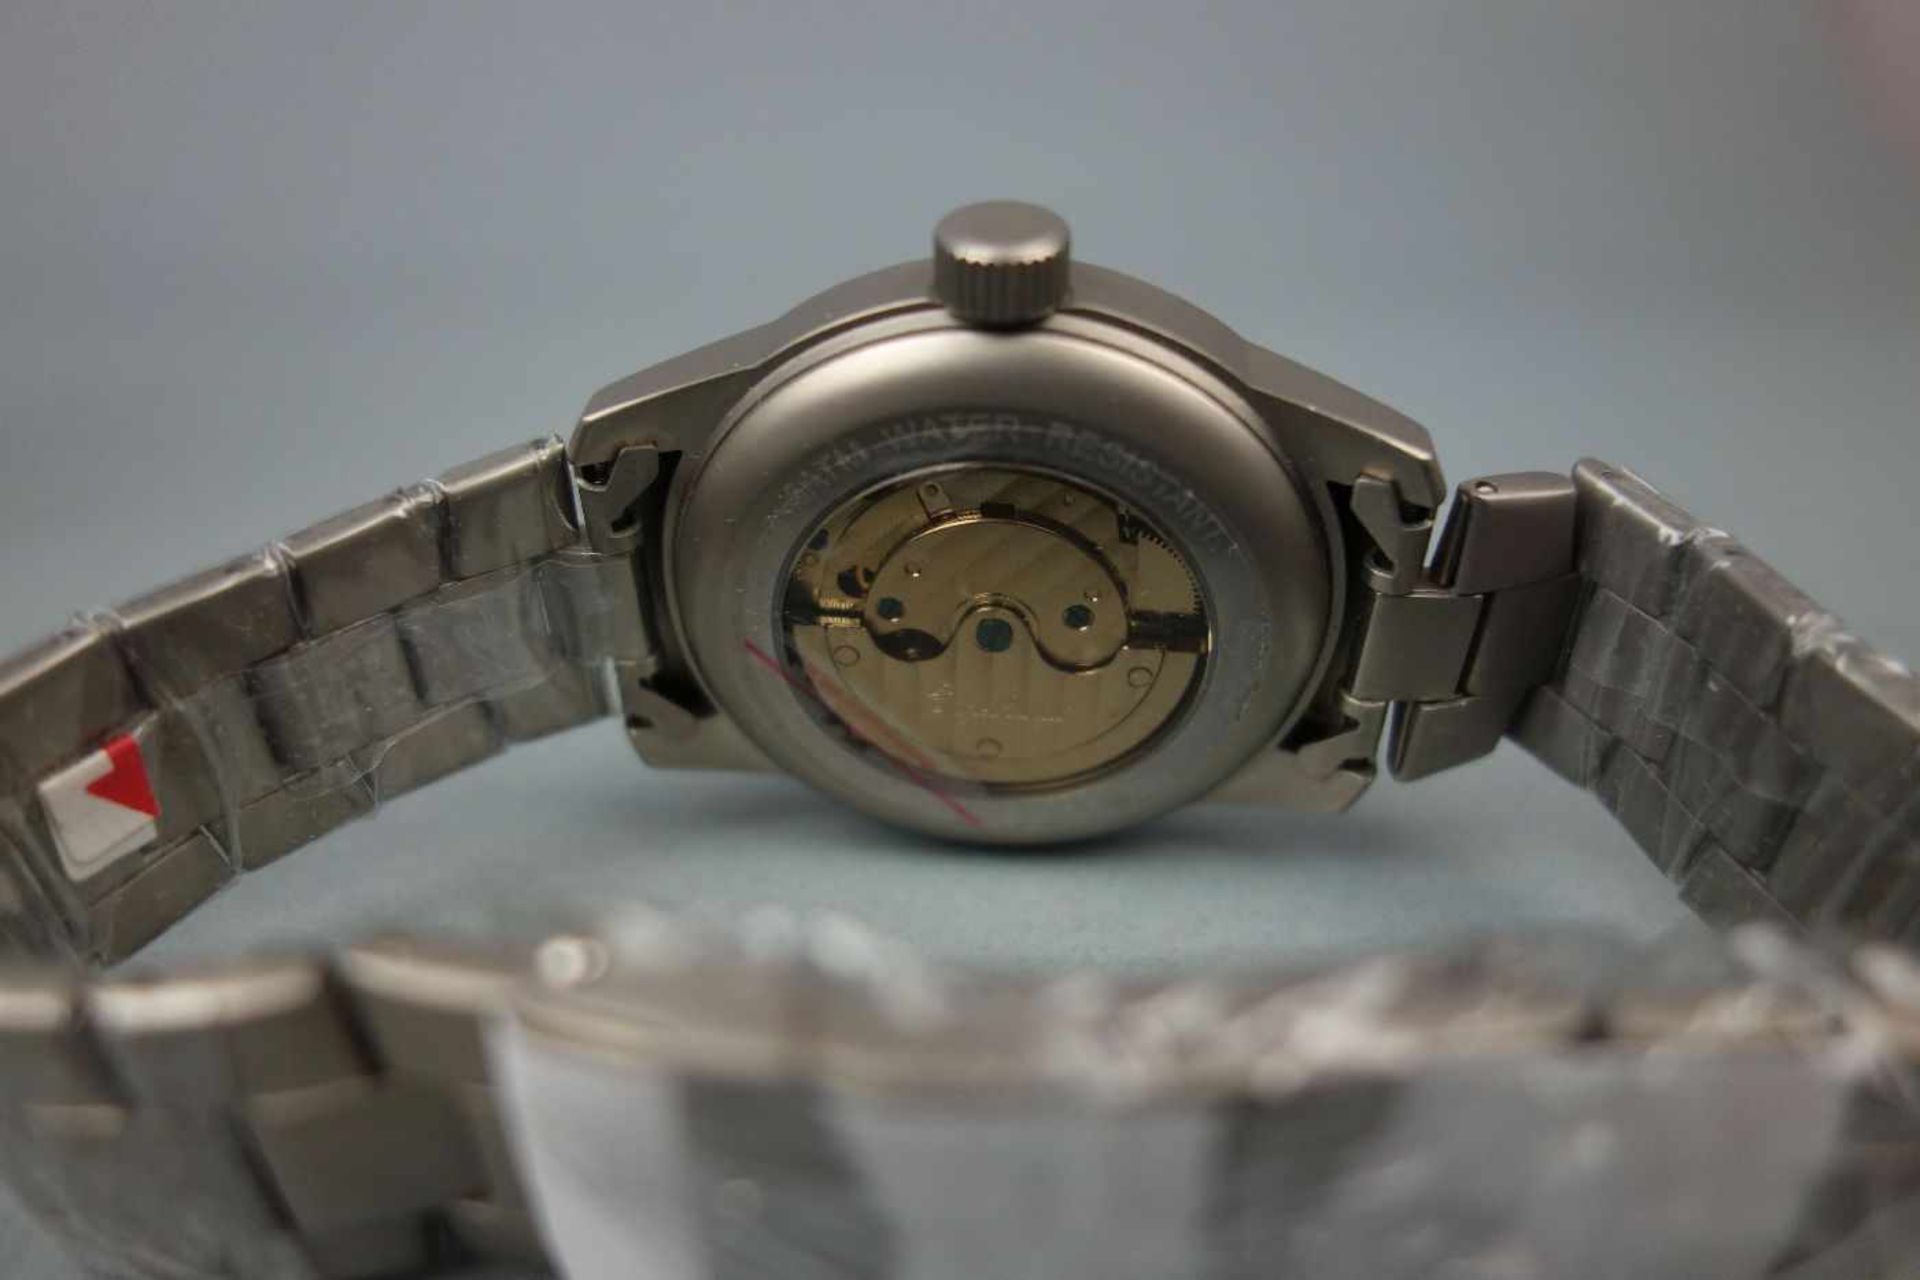 NEUWERTIGE ENGELHARDT ARMBANDUHR / wristwatch, Automatik-Uhr. Rundes mattiertes Stahlgehäuse mit - Bild 3 aus 3